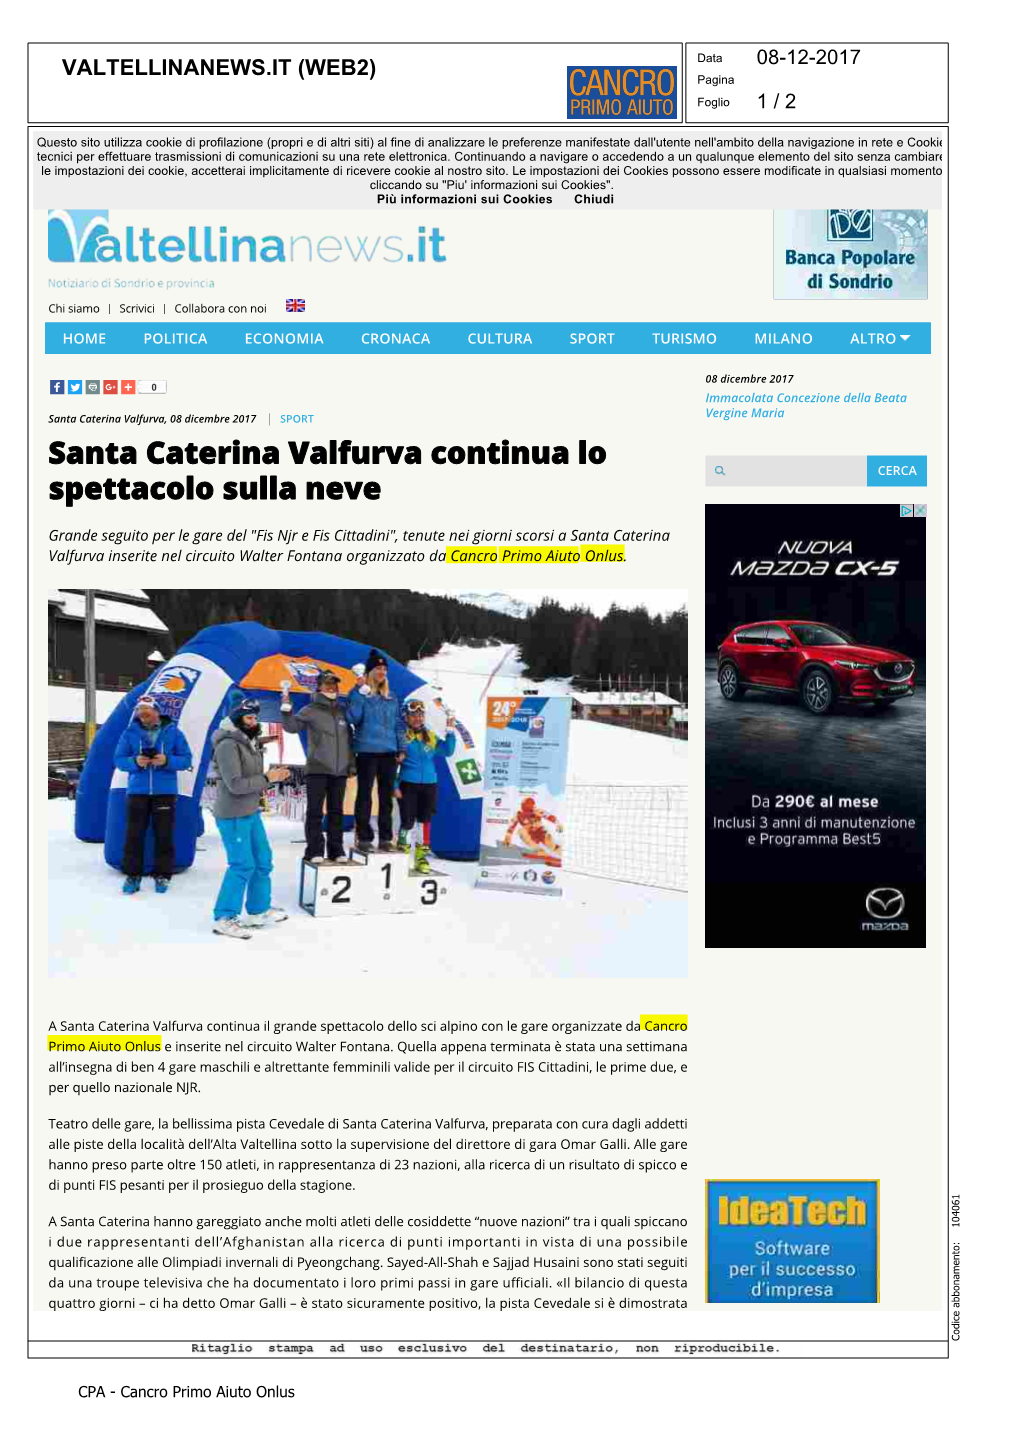 8.12.2017 – Santa Caterina Valfurva Continua Lo